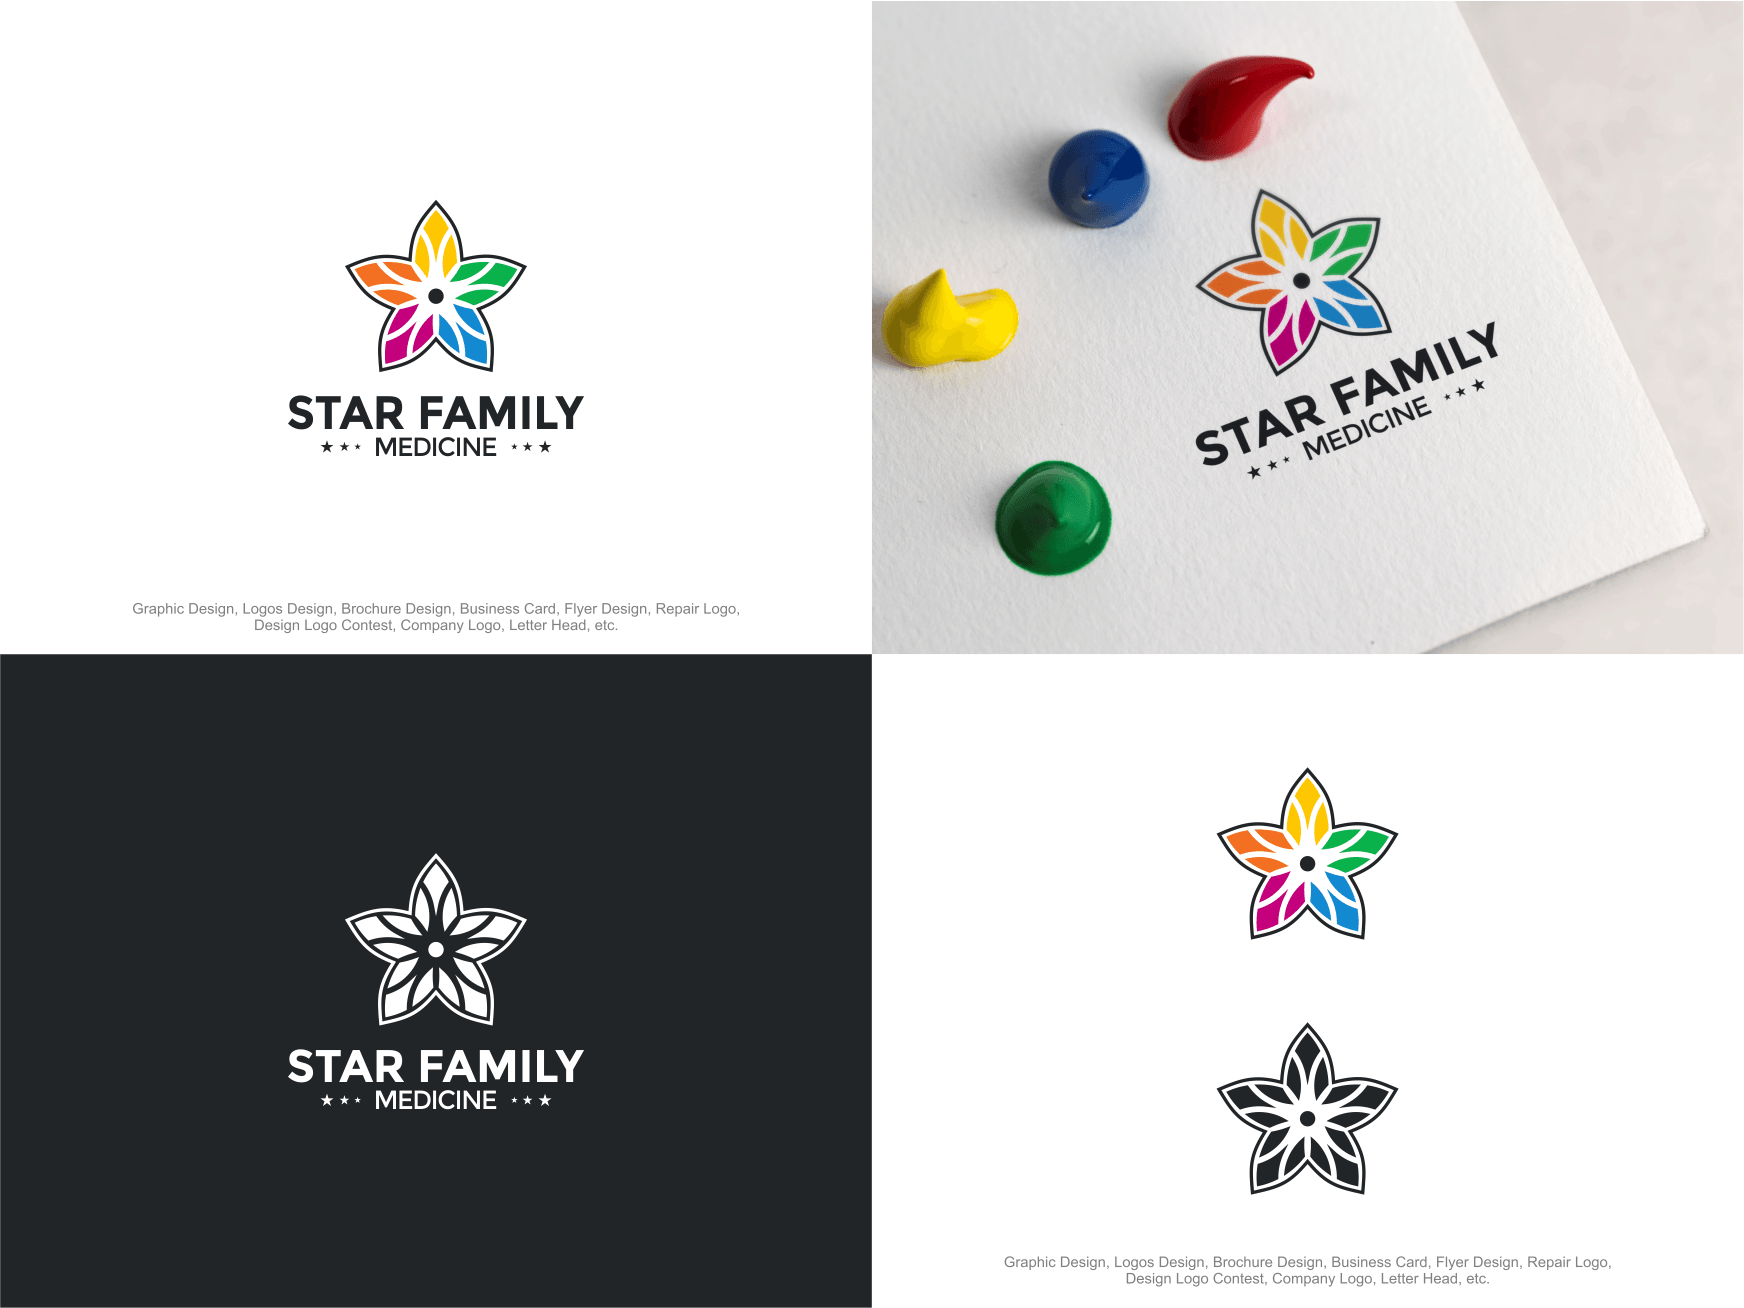 Star Family Logo - Logo and Business Card Design. 'Star Family Medicine' design